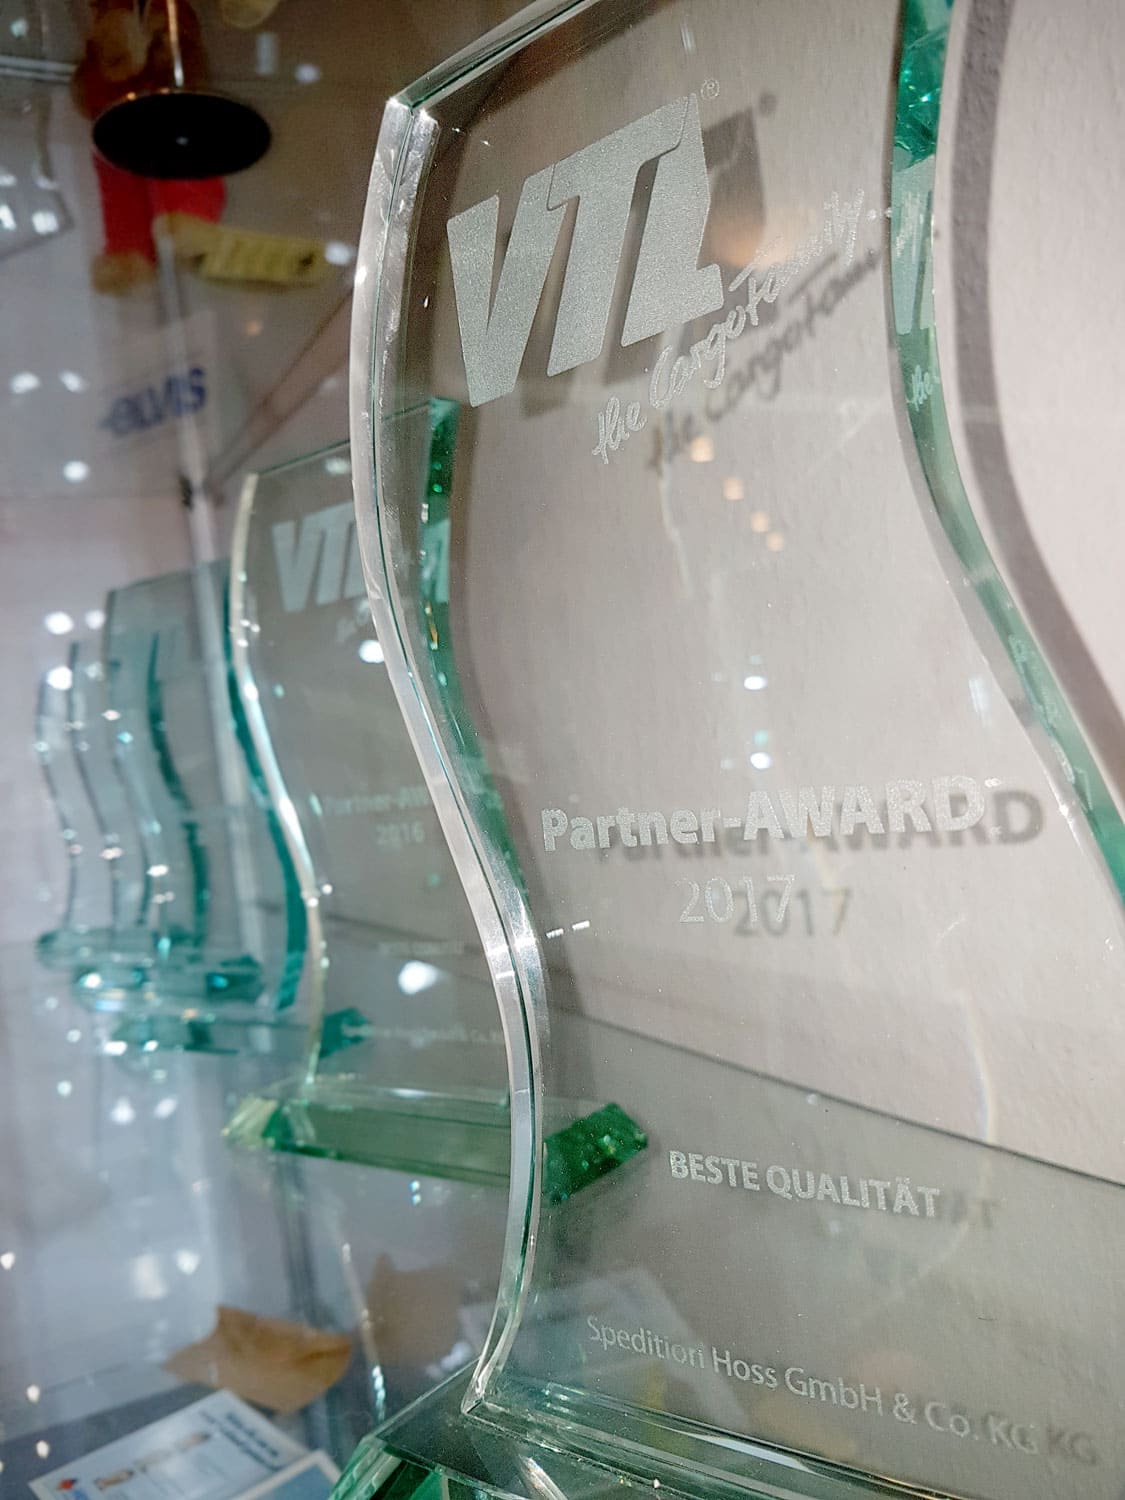 VTL-Award 2017 "Beste Qualität" geht an Spedition Hoss